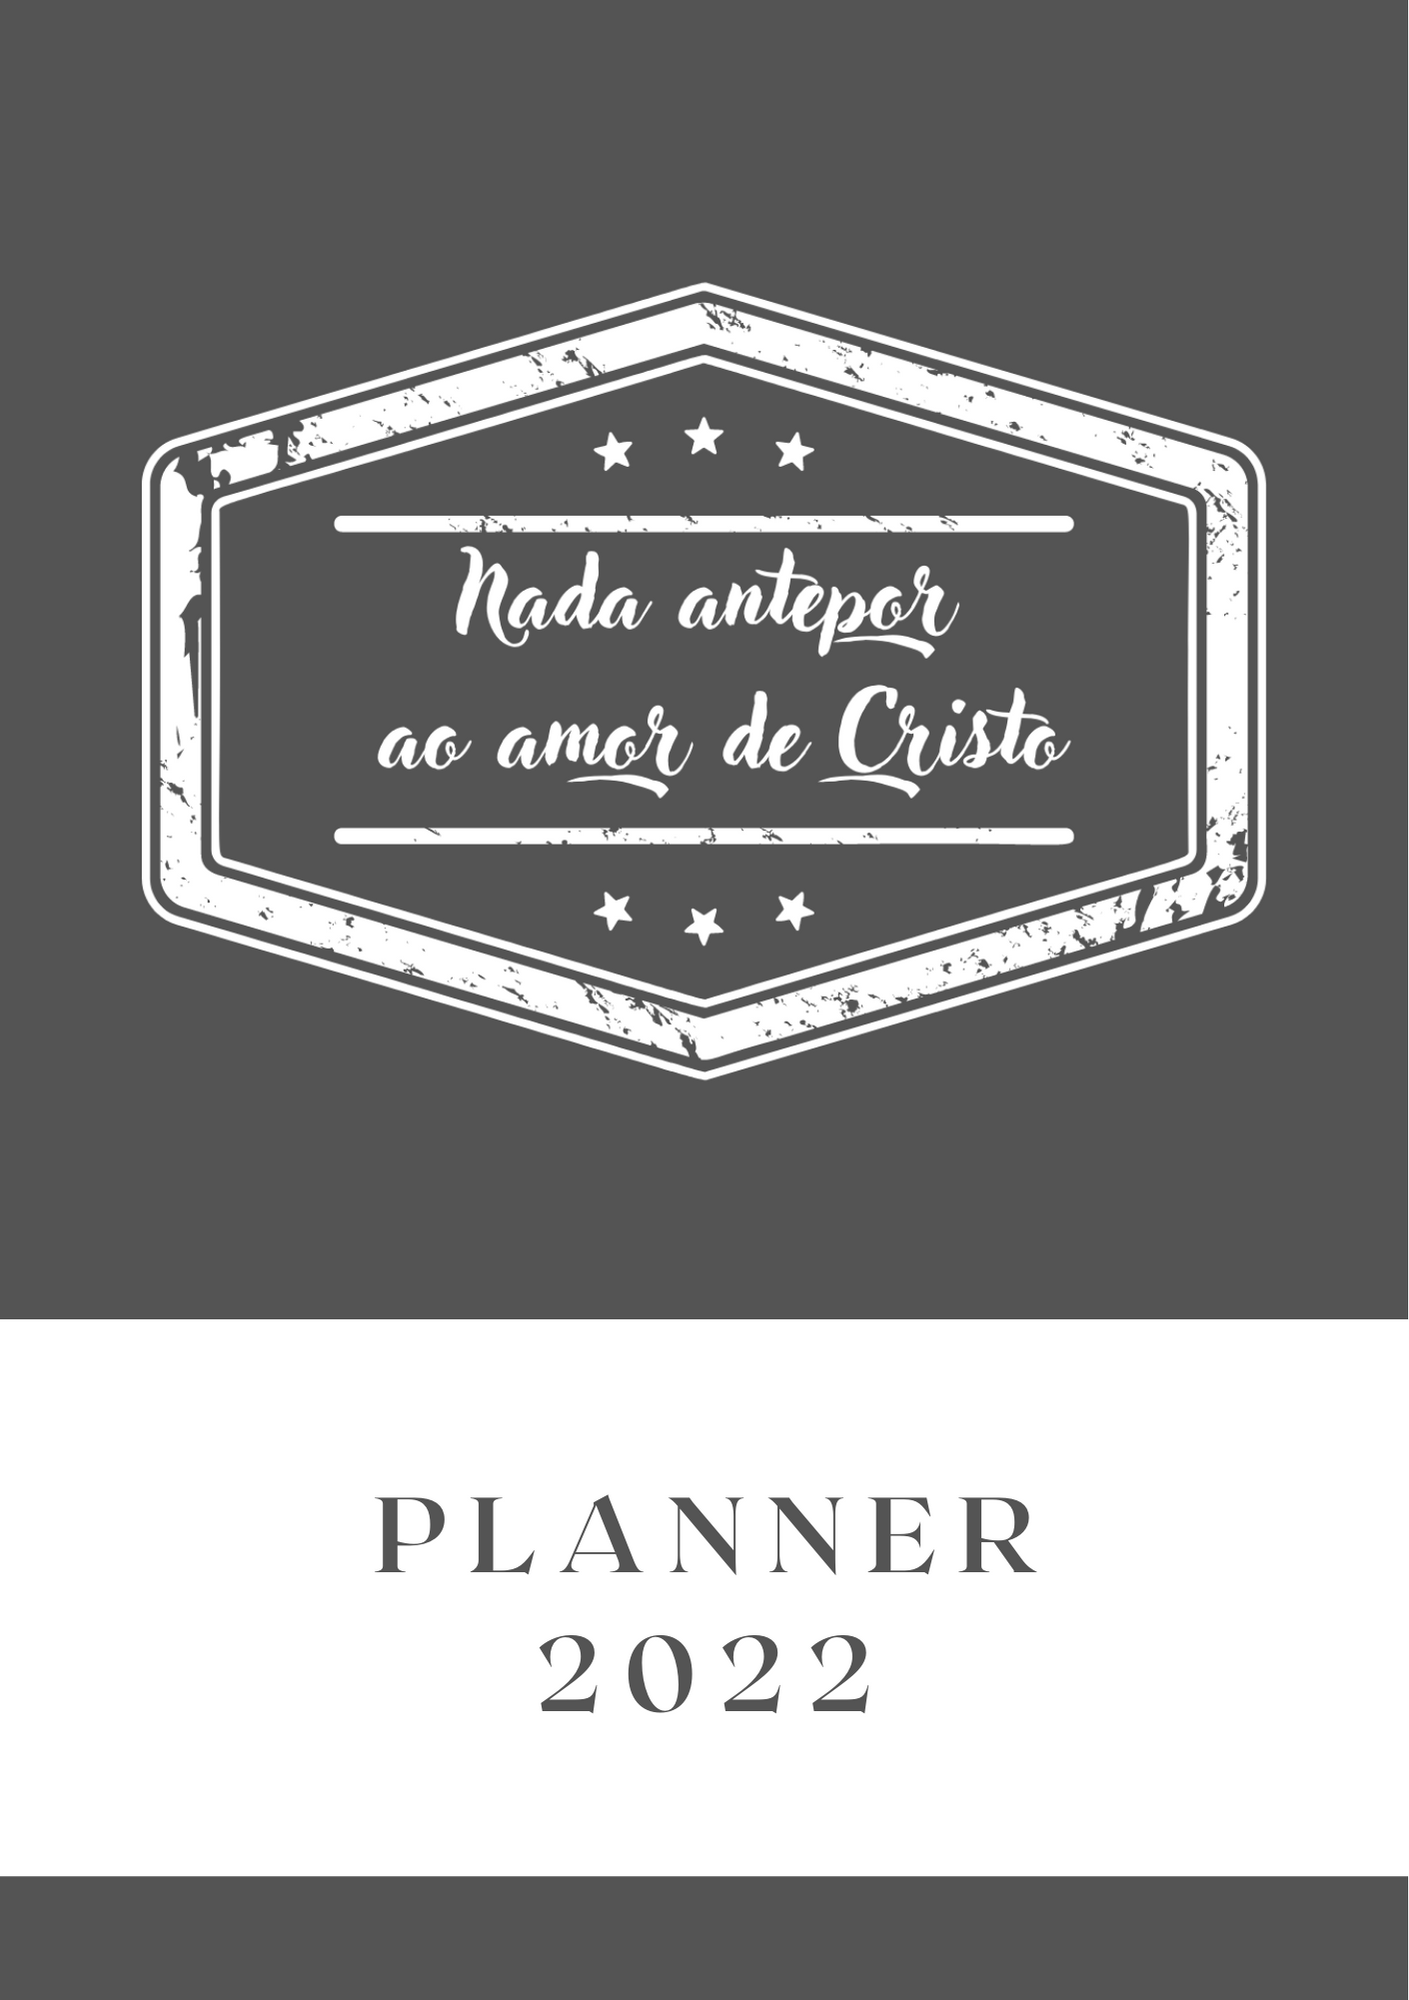 planner 2022 - modelo 6